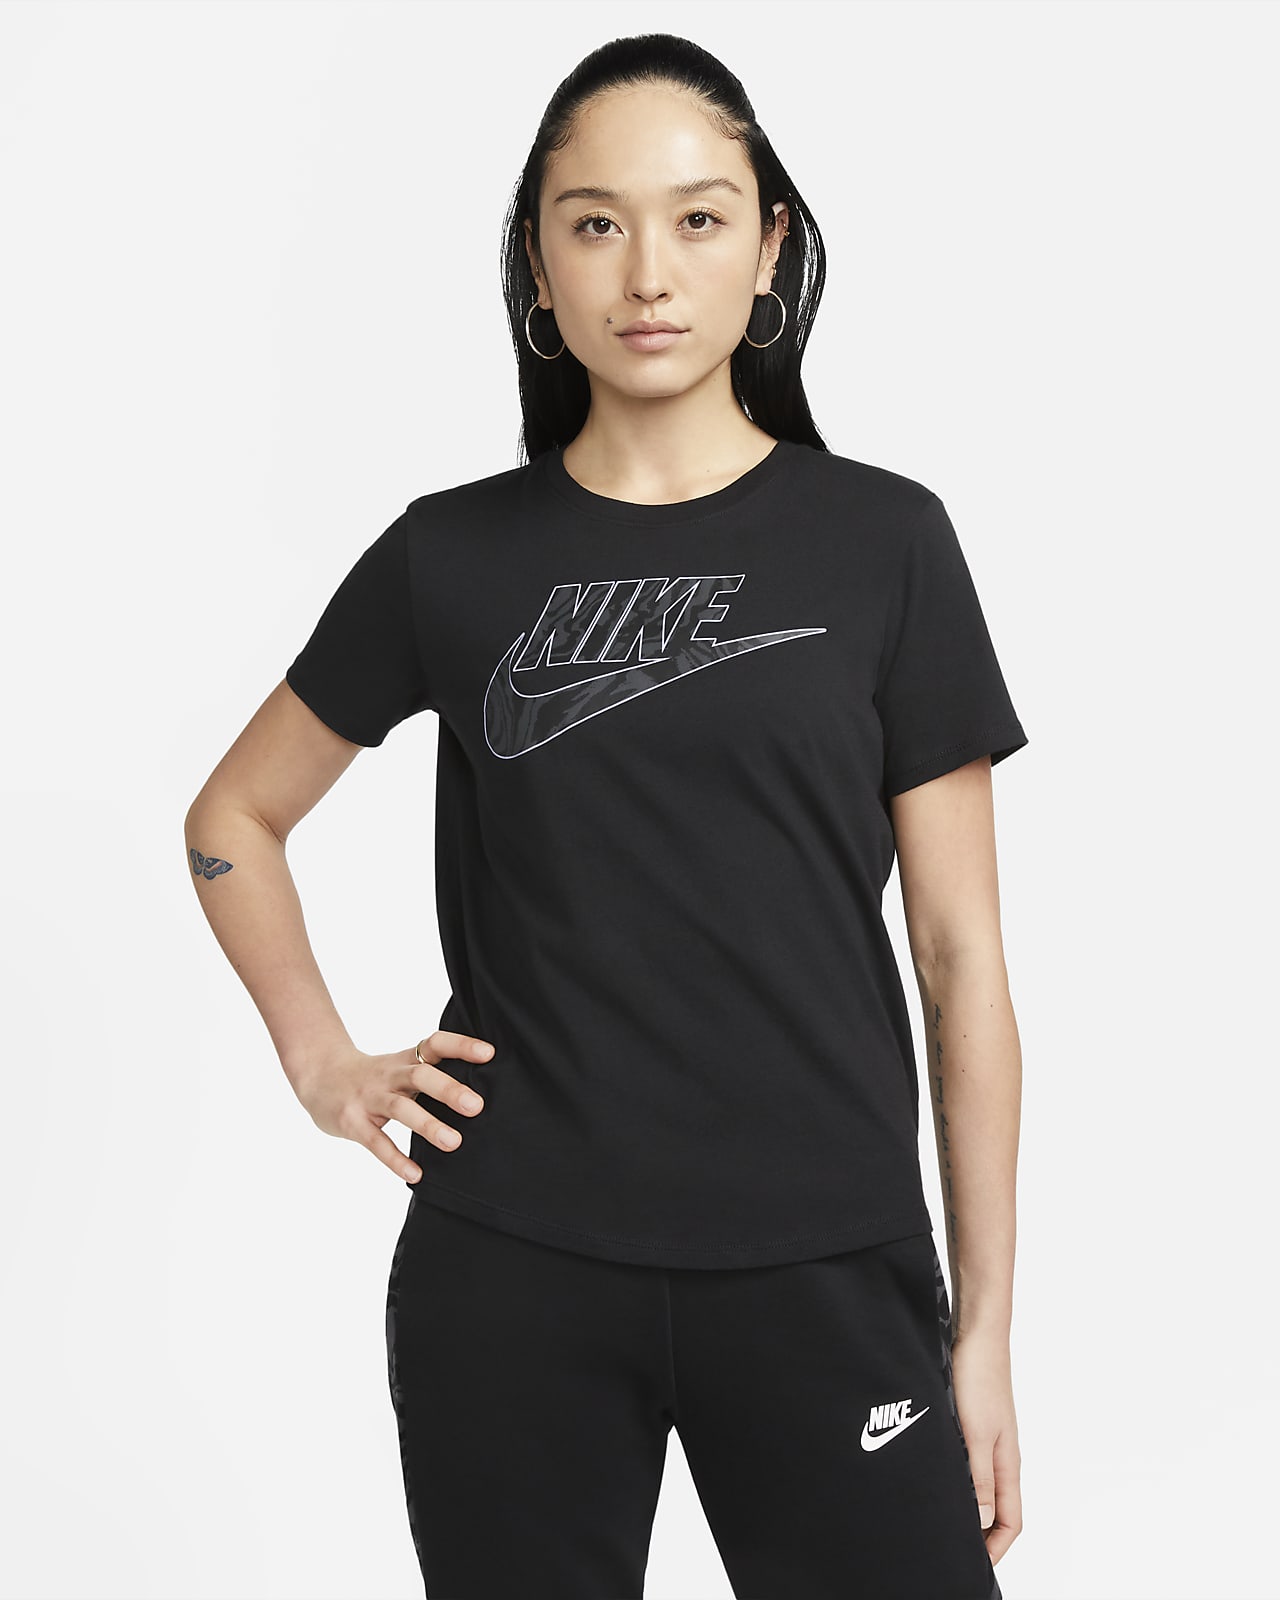 NIKE公式】ナイキ スポーツウェア ウィメンズ Tシャツ.オンラインストア (通販サイト)